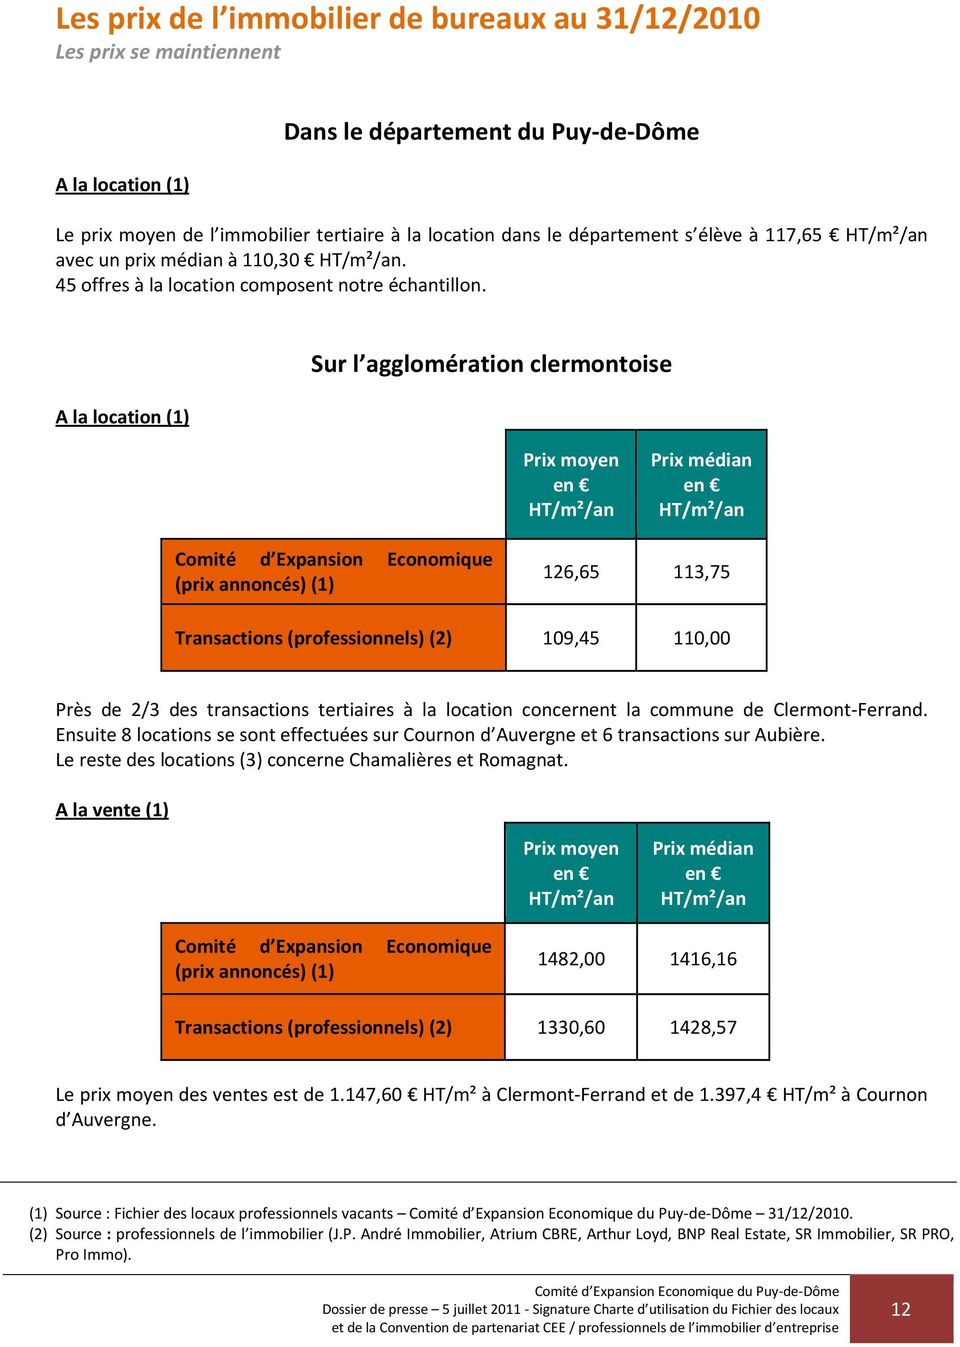 A la location (1) Sur l agglomération clermontoise Prix moyen en HT/m²/an Prix médian en HT/m²/an Comité d Expansion Economique (prix annoncés) (1) 126,65 113,75 Transactions (professionnels) (2)